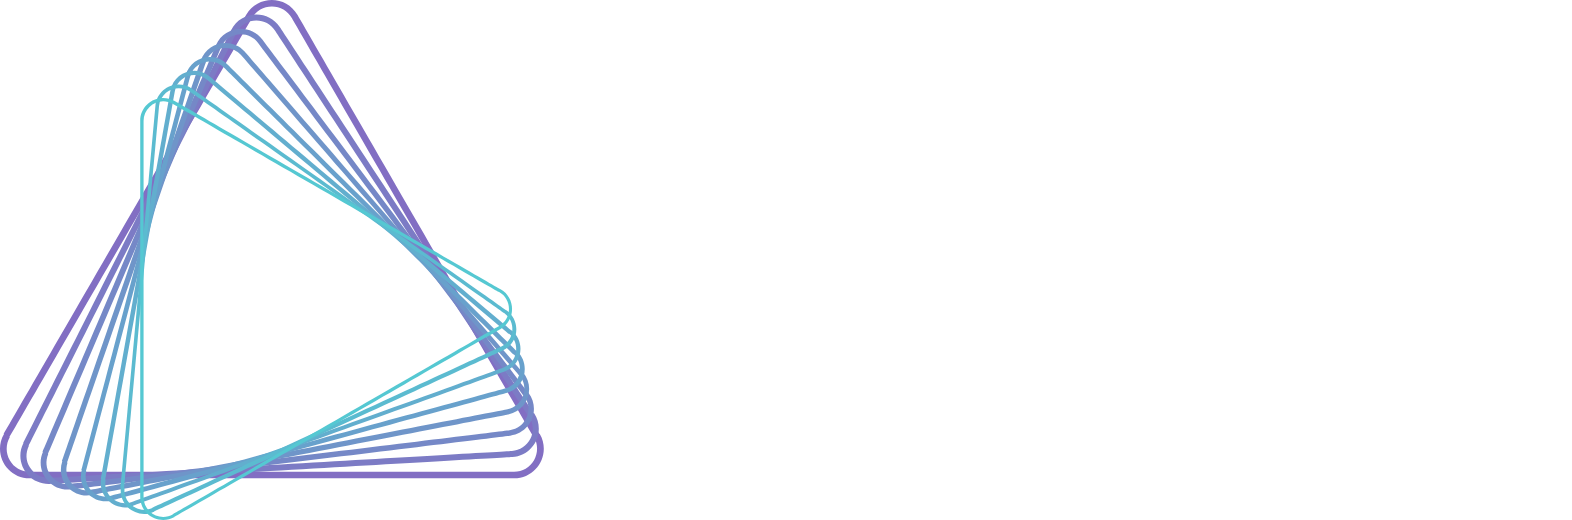 Azenta logo large for dark backgrounds (transparent PNG)